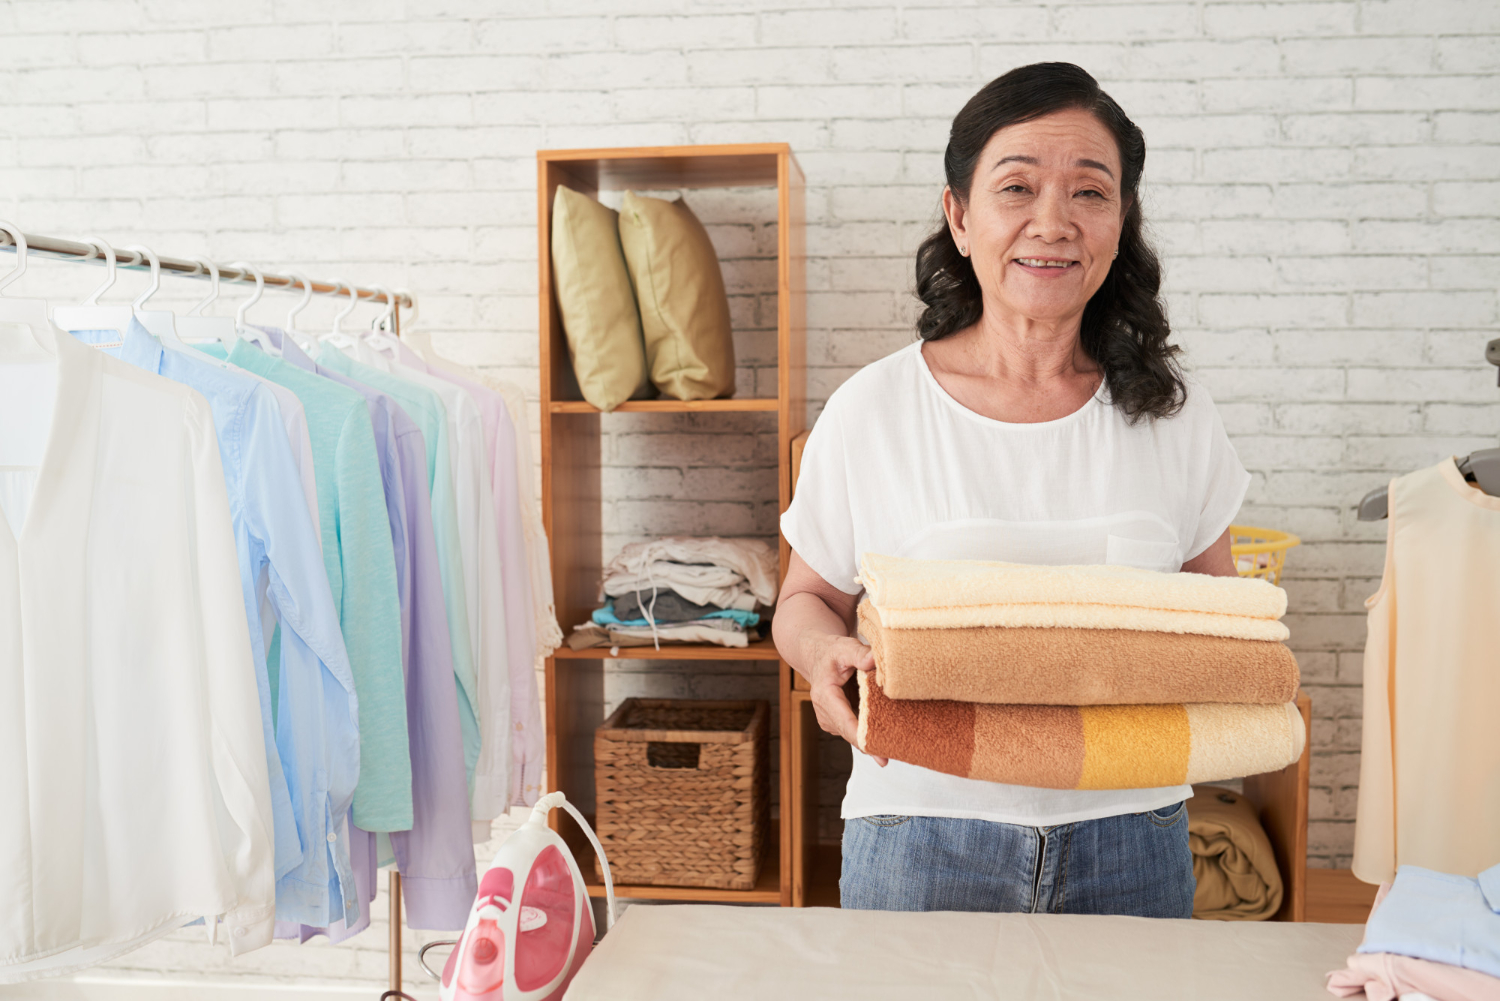 Bisnis laundry merupakan salah satu contoh bisnis rumahan